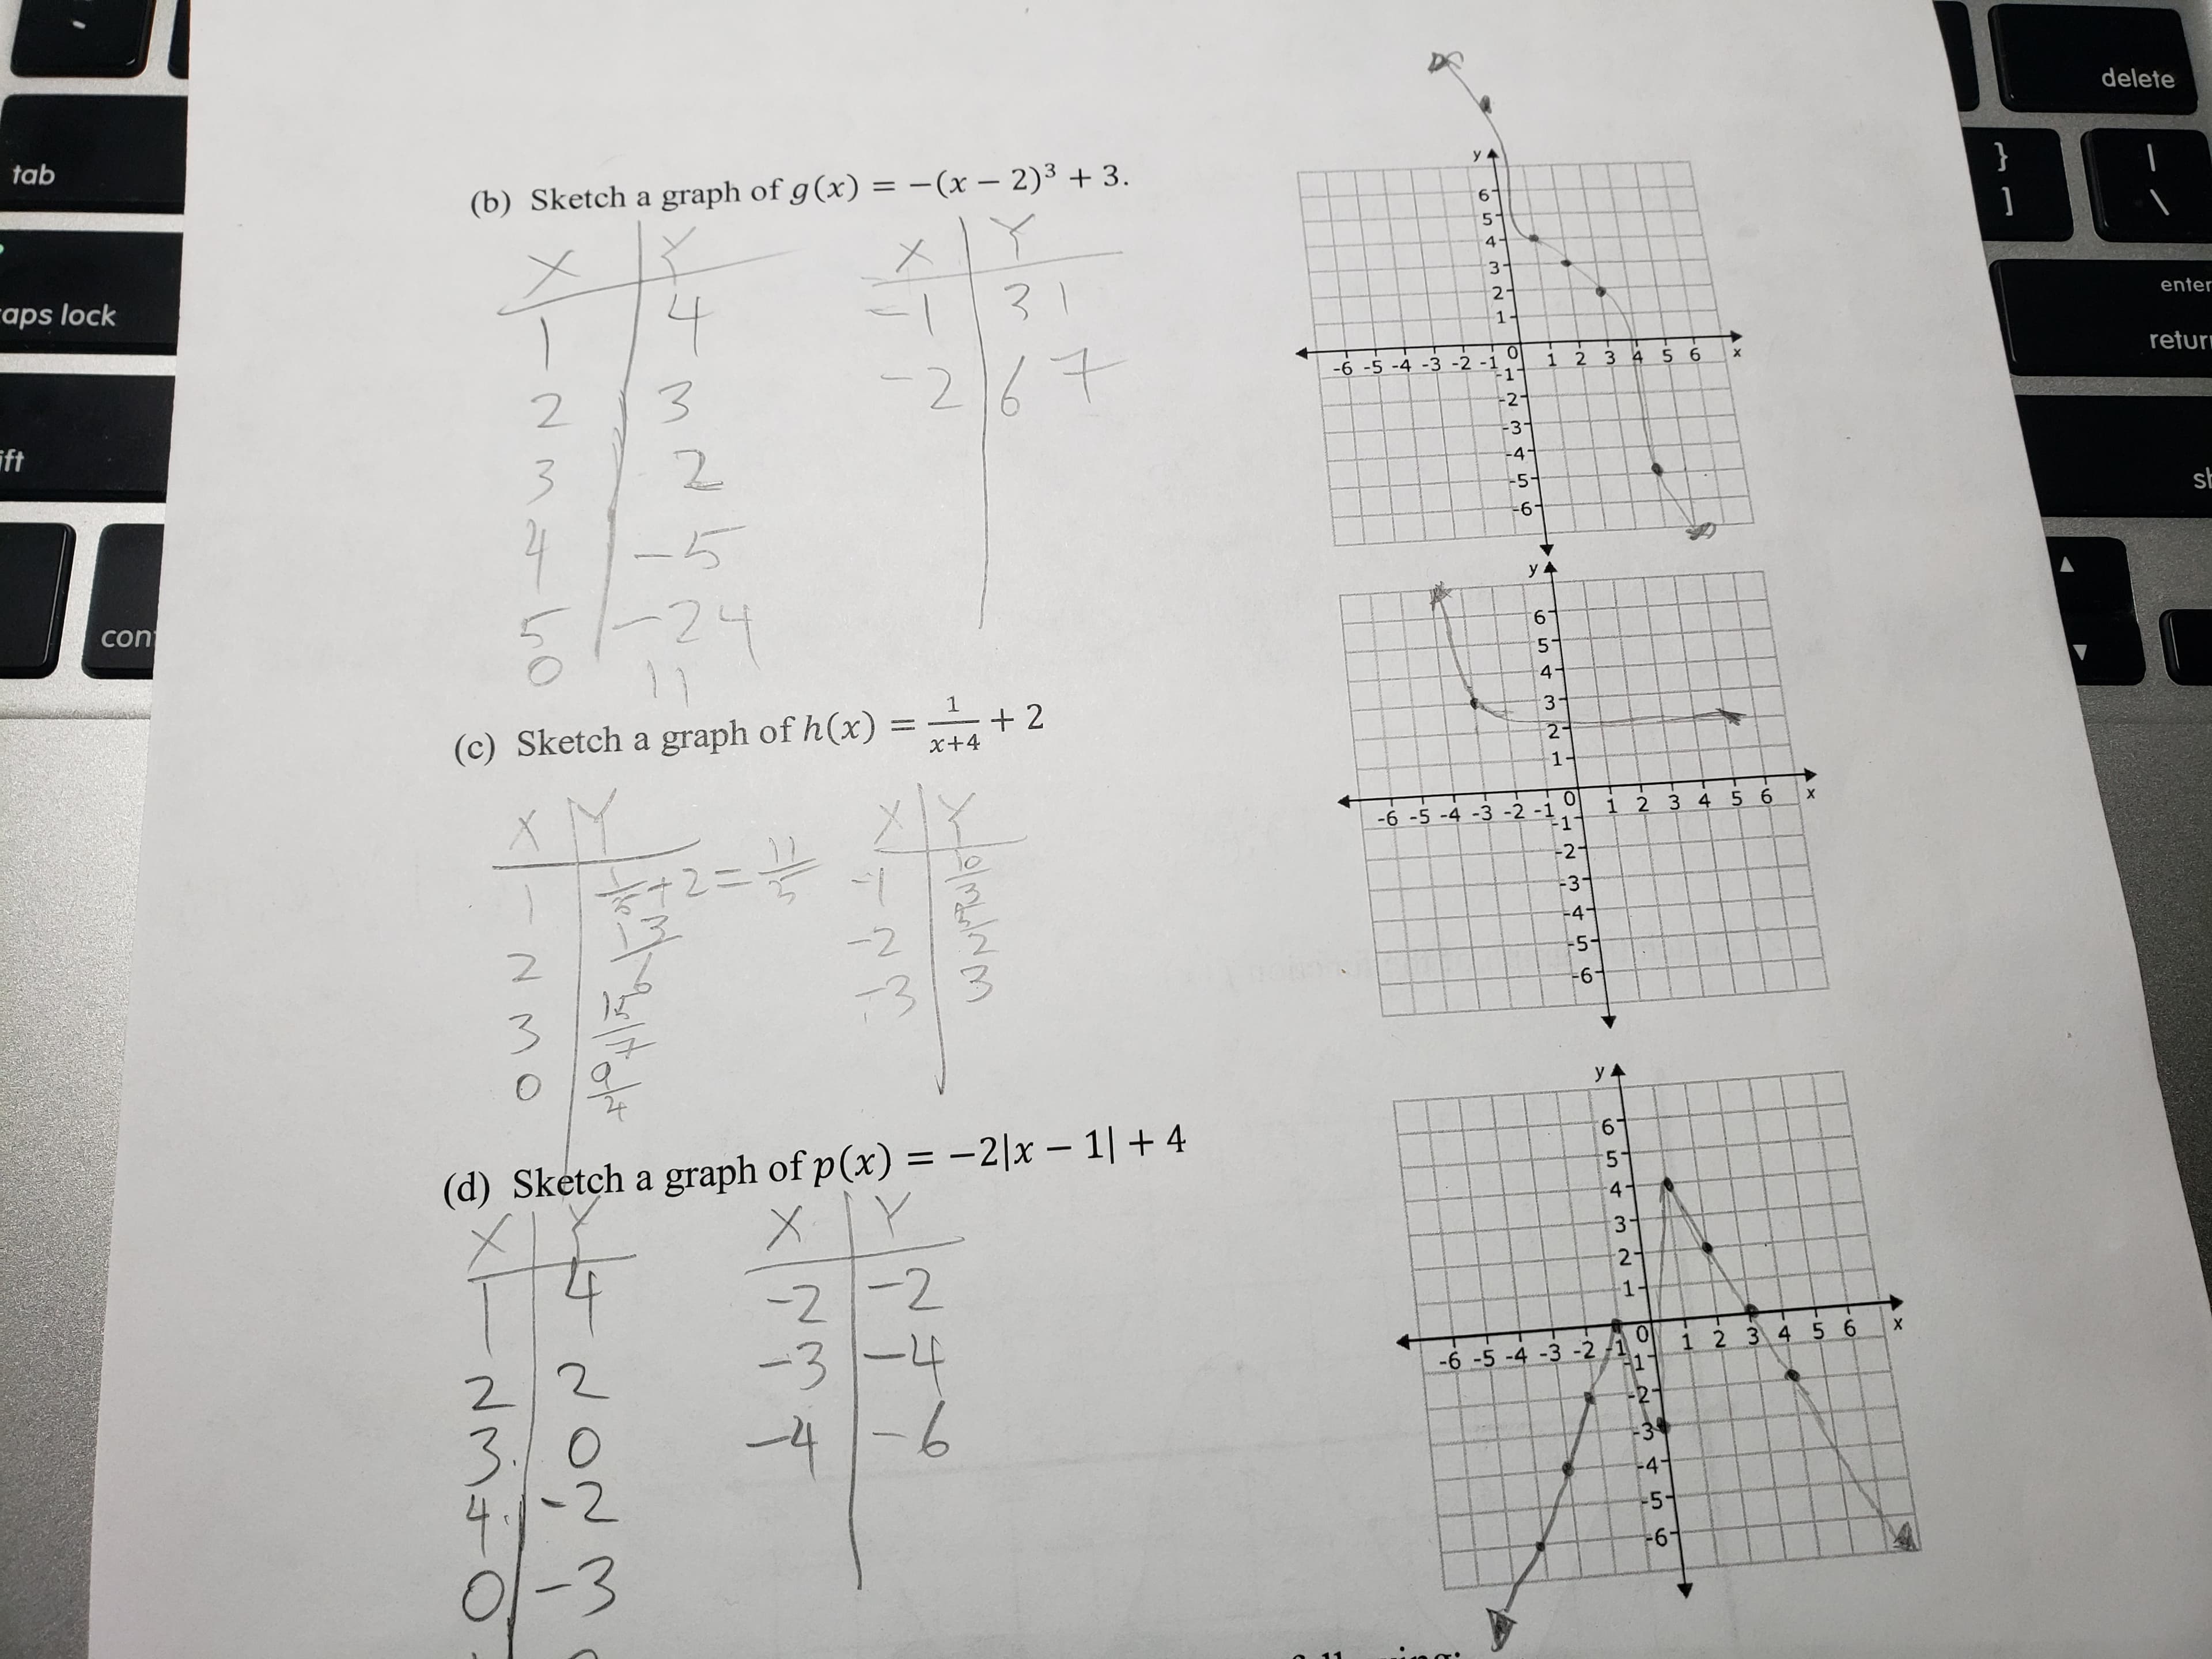 delete
tab
(b) Sketch a graph of g (x)x - 2)3 3.
enter
2
aps lock
retur
-1
6-5-4-3-2
216 .
213
2
3 2
ift
6
con
(c) Sketch a graph of h (x) =-+2
3 45 6 x
6 -5-4-3-2-1
2
3
4
2
6
(d) Sketch a graph of p (x) =-21x-11 + 4
6-5-4-3-2/101 2 34 5 6 X
0
2
